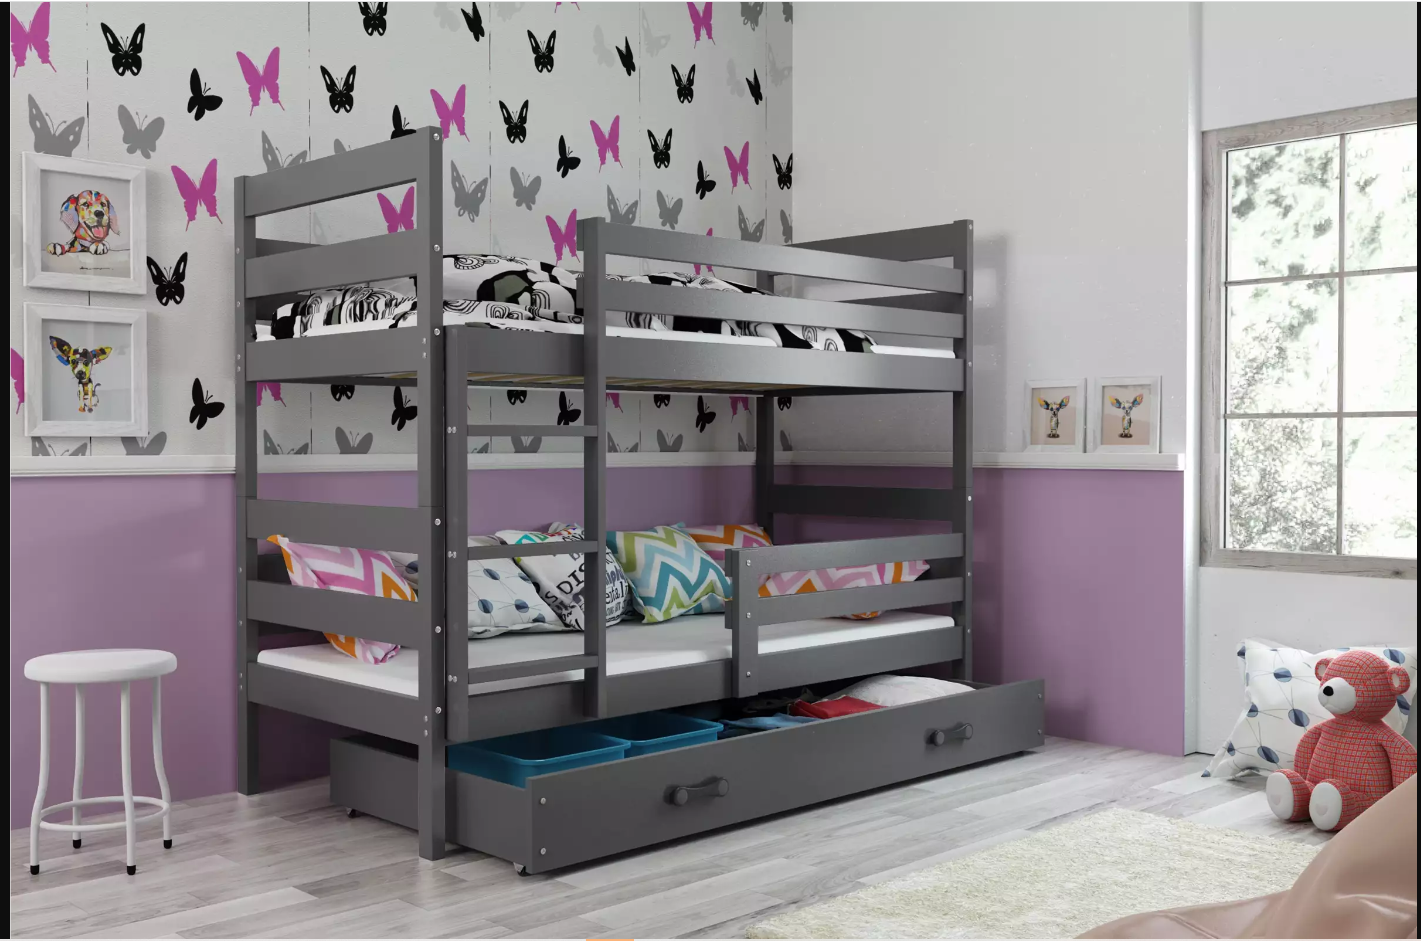 Les lits superposés : transformez votre petite chambre en une oasis de confort